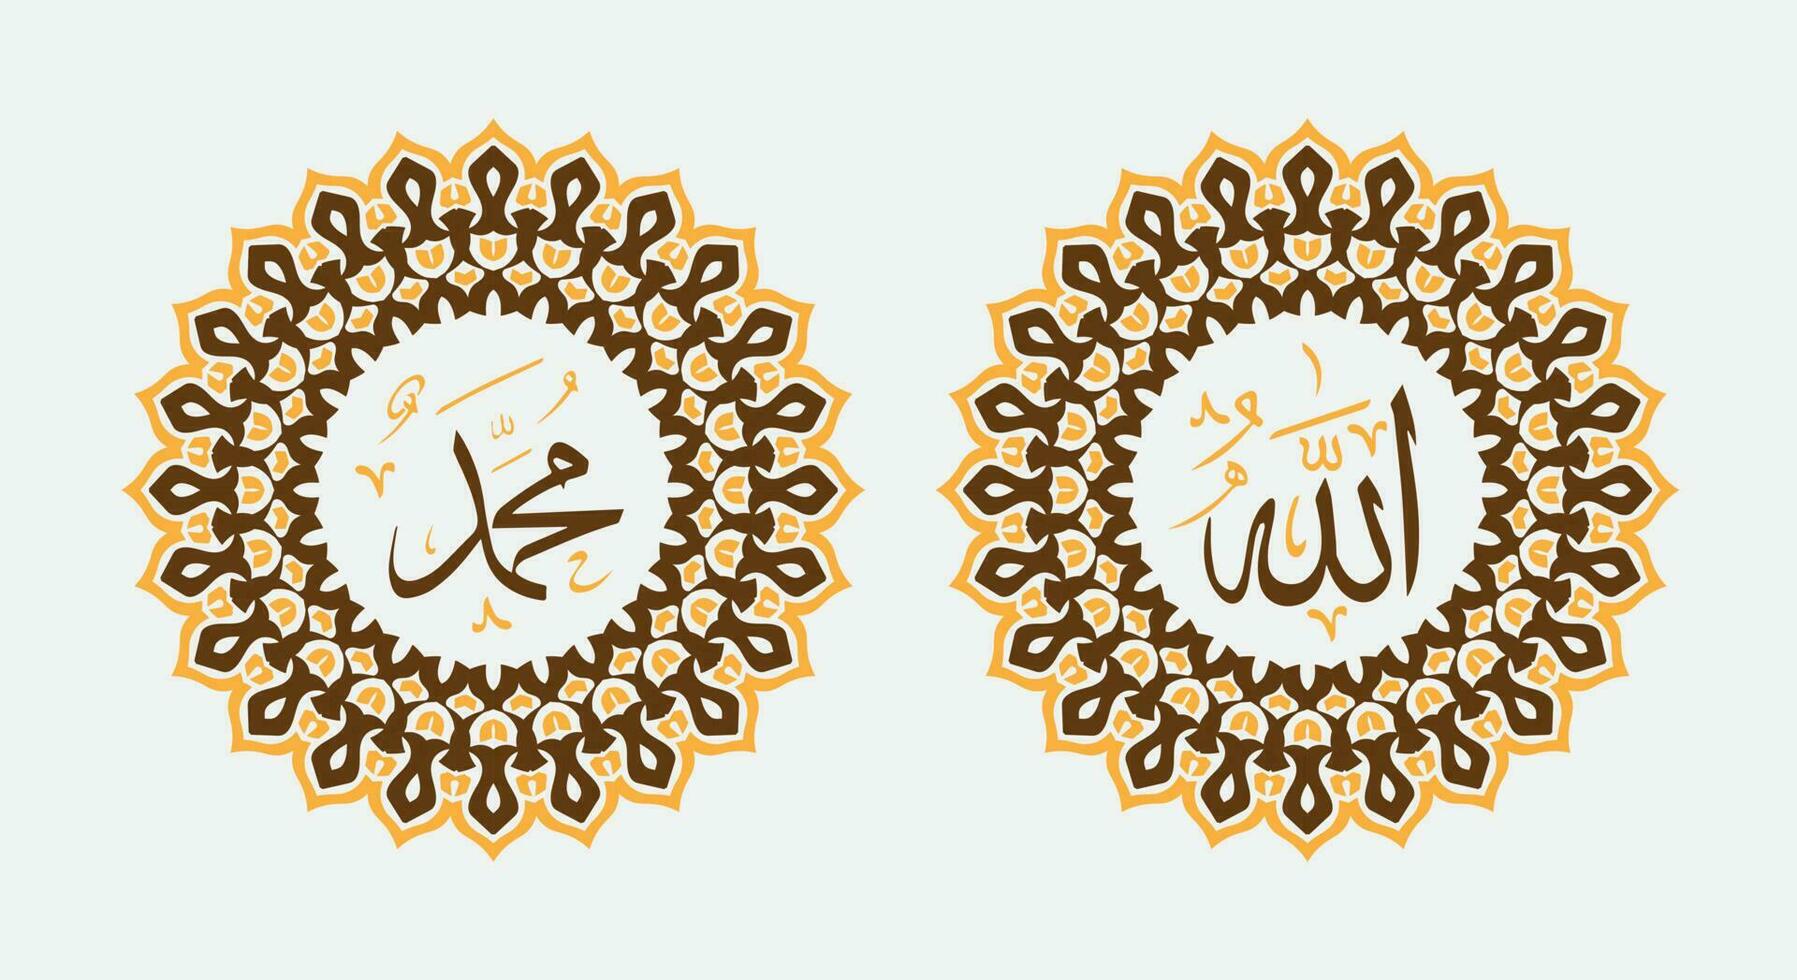 Allah Mohammed naam van Allah Mohammed, Allah Mohammed Arabisch Islamitisch schoonschrift kunst, met traditioneel kader en modern kleur vector